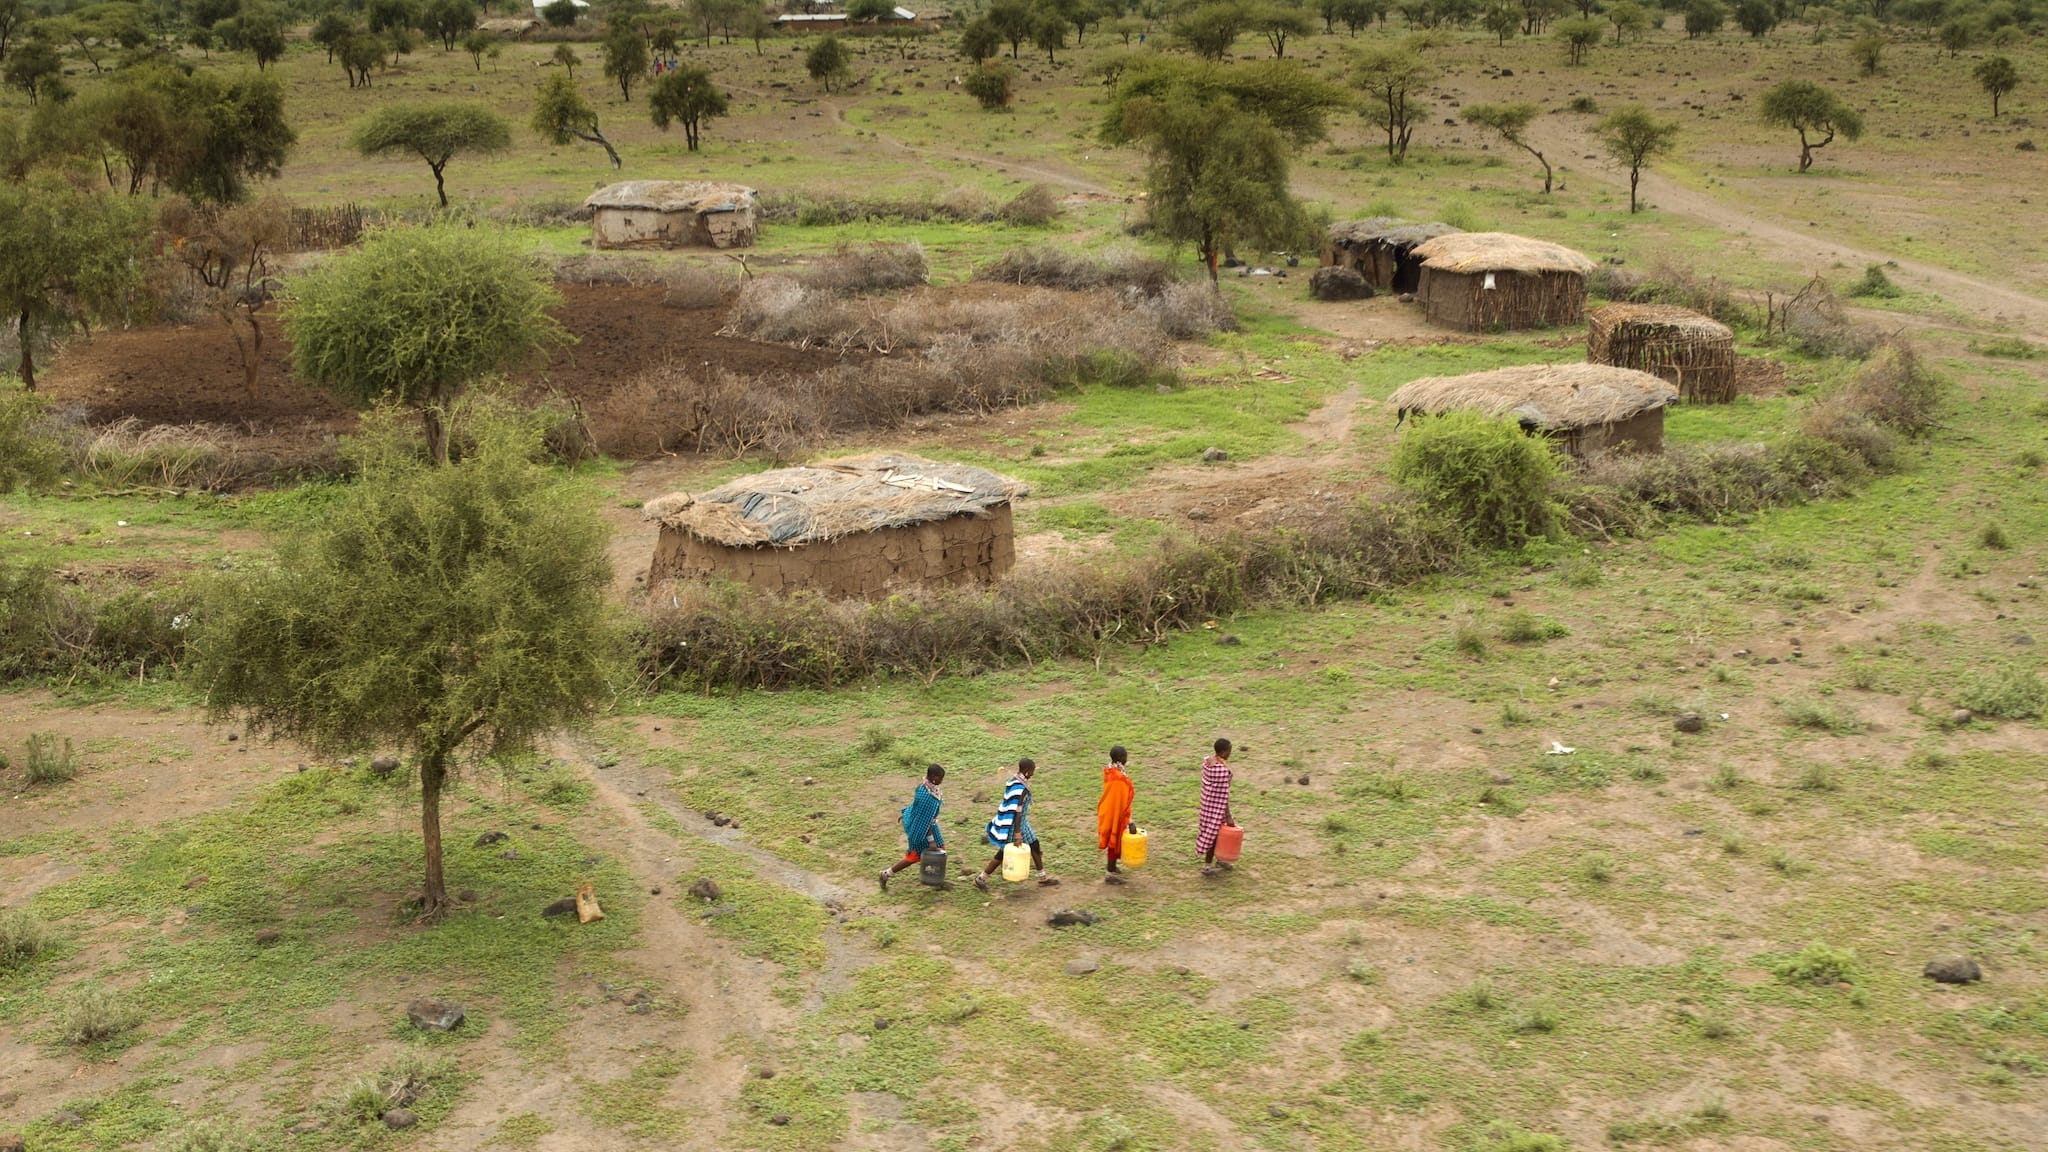 L'Afrique vue du ciel image documentaire